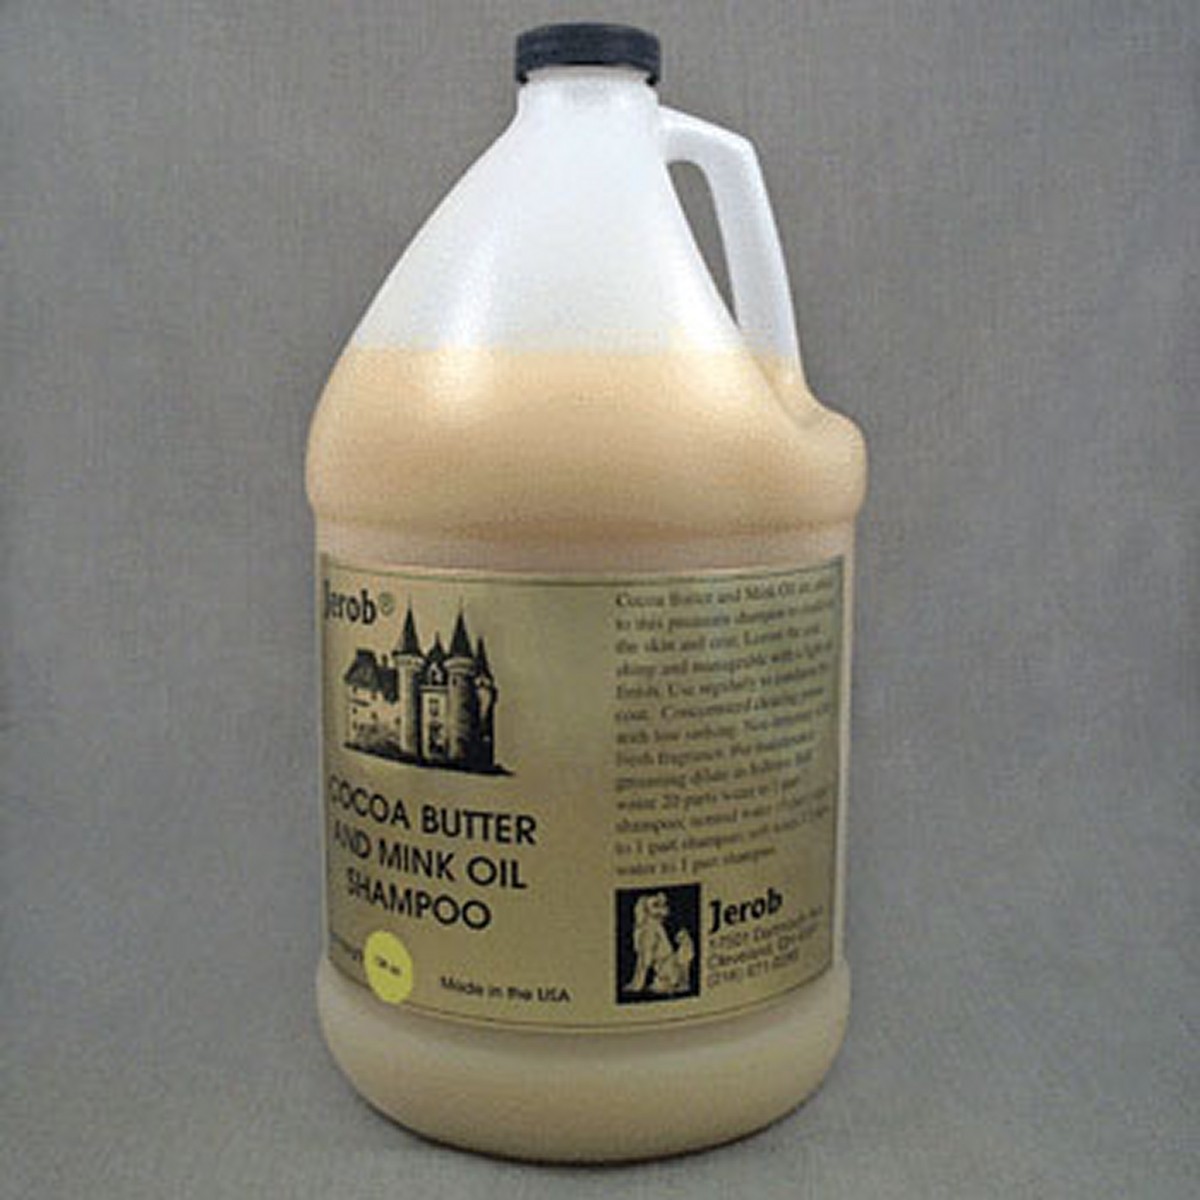 Jerob šampon Cocoa Butter & Mink Oil 3,8 l